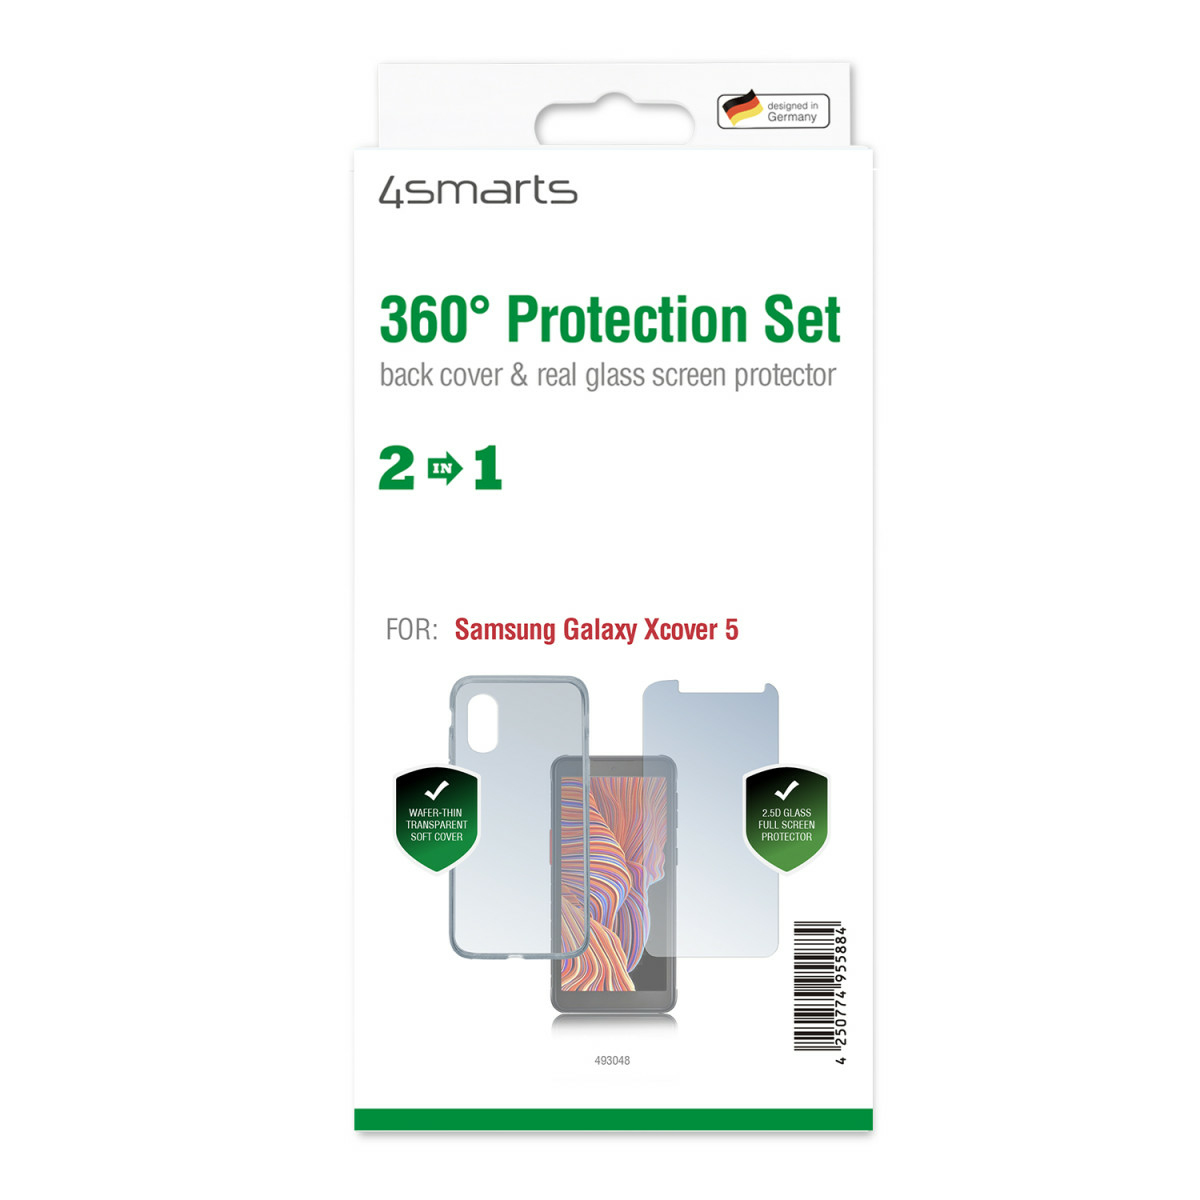 4smarts 360° protection set - Schutzhülle für Mobiltelefon - fettabweisende Beschichtung, gehärtetes Glas (9H)